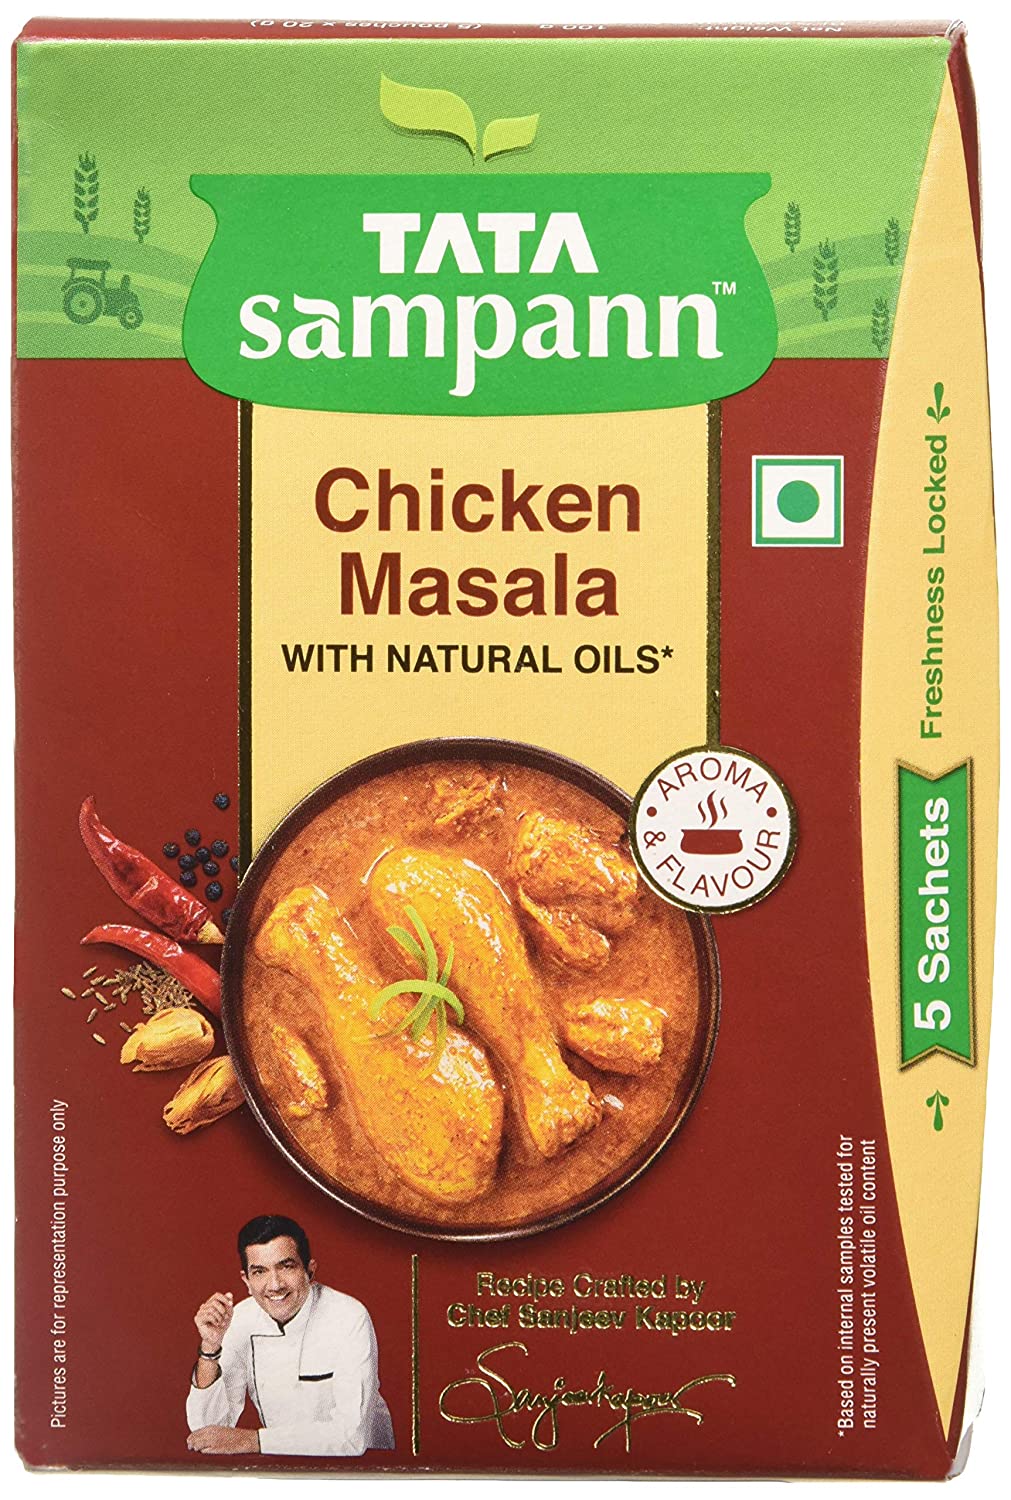 10 Best Chicken Masala Powder in India